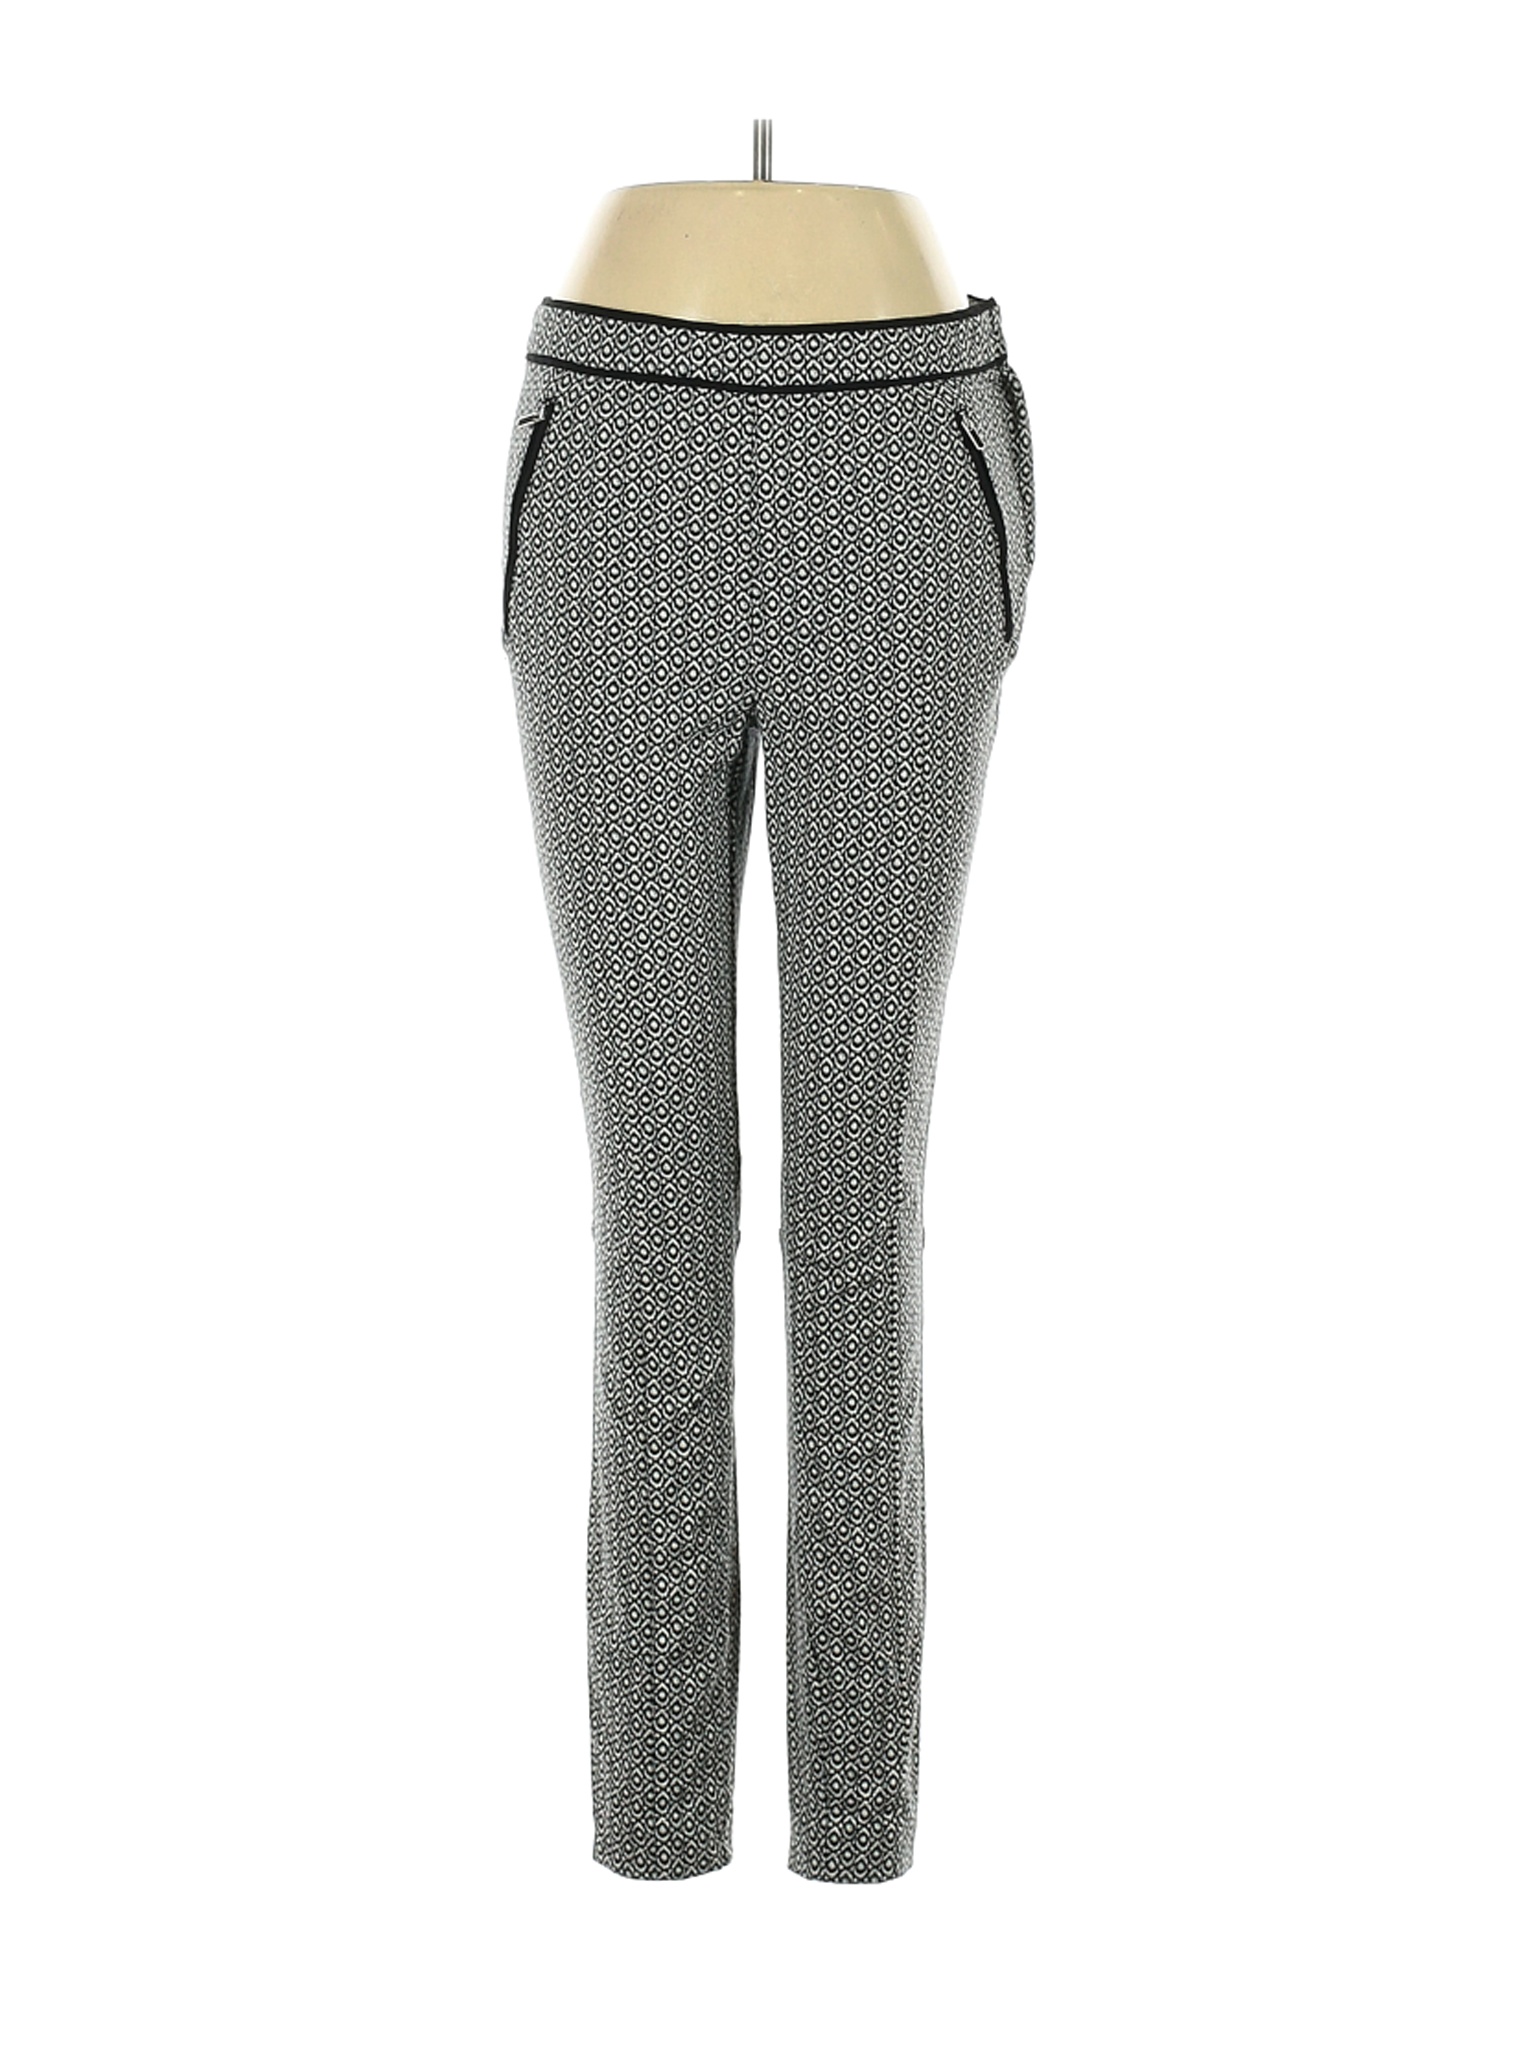 H&M Women Gray Dress Pants 6 | eBay